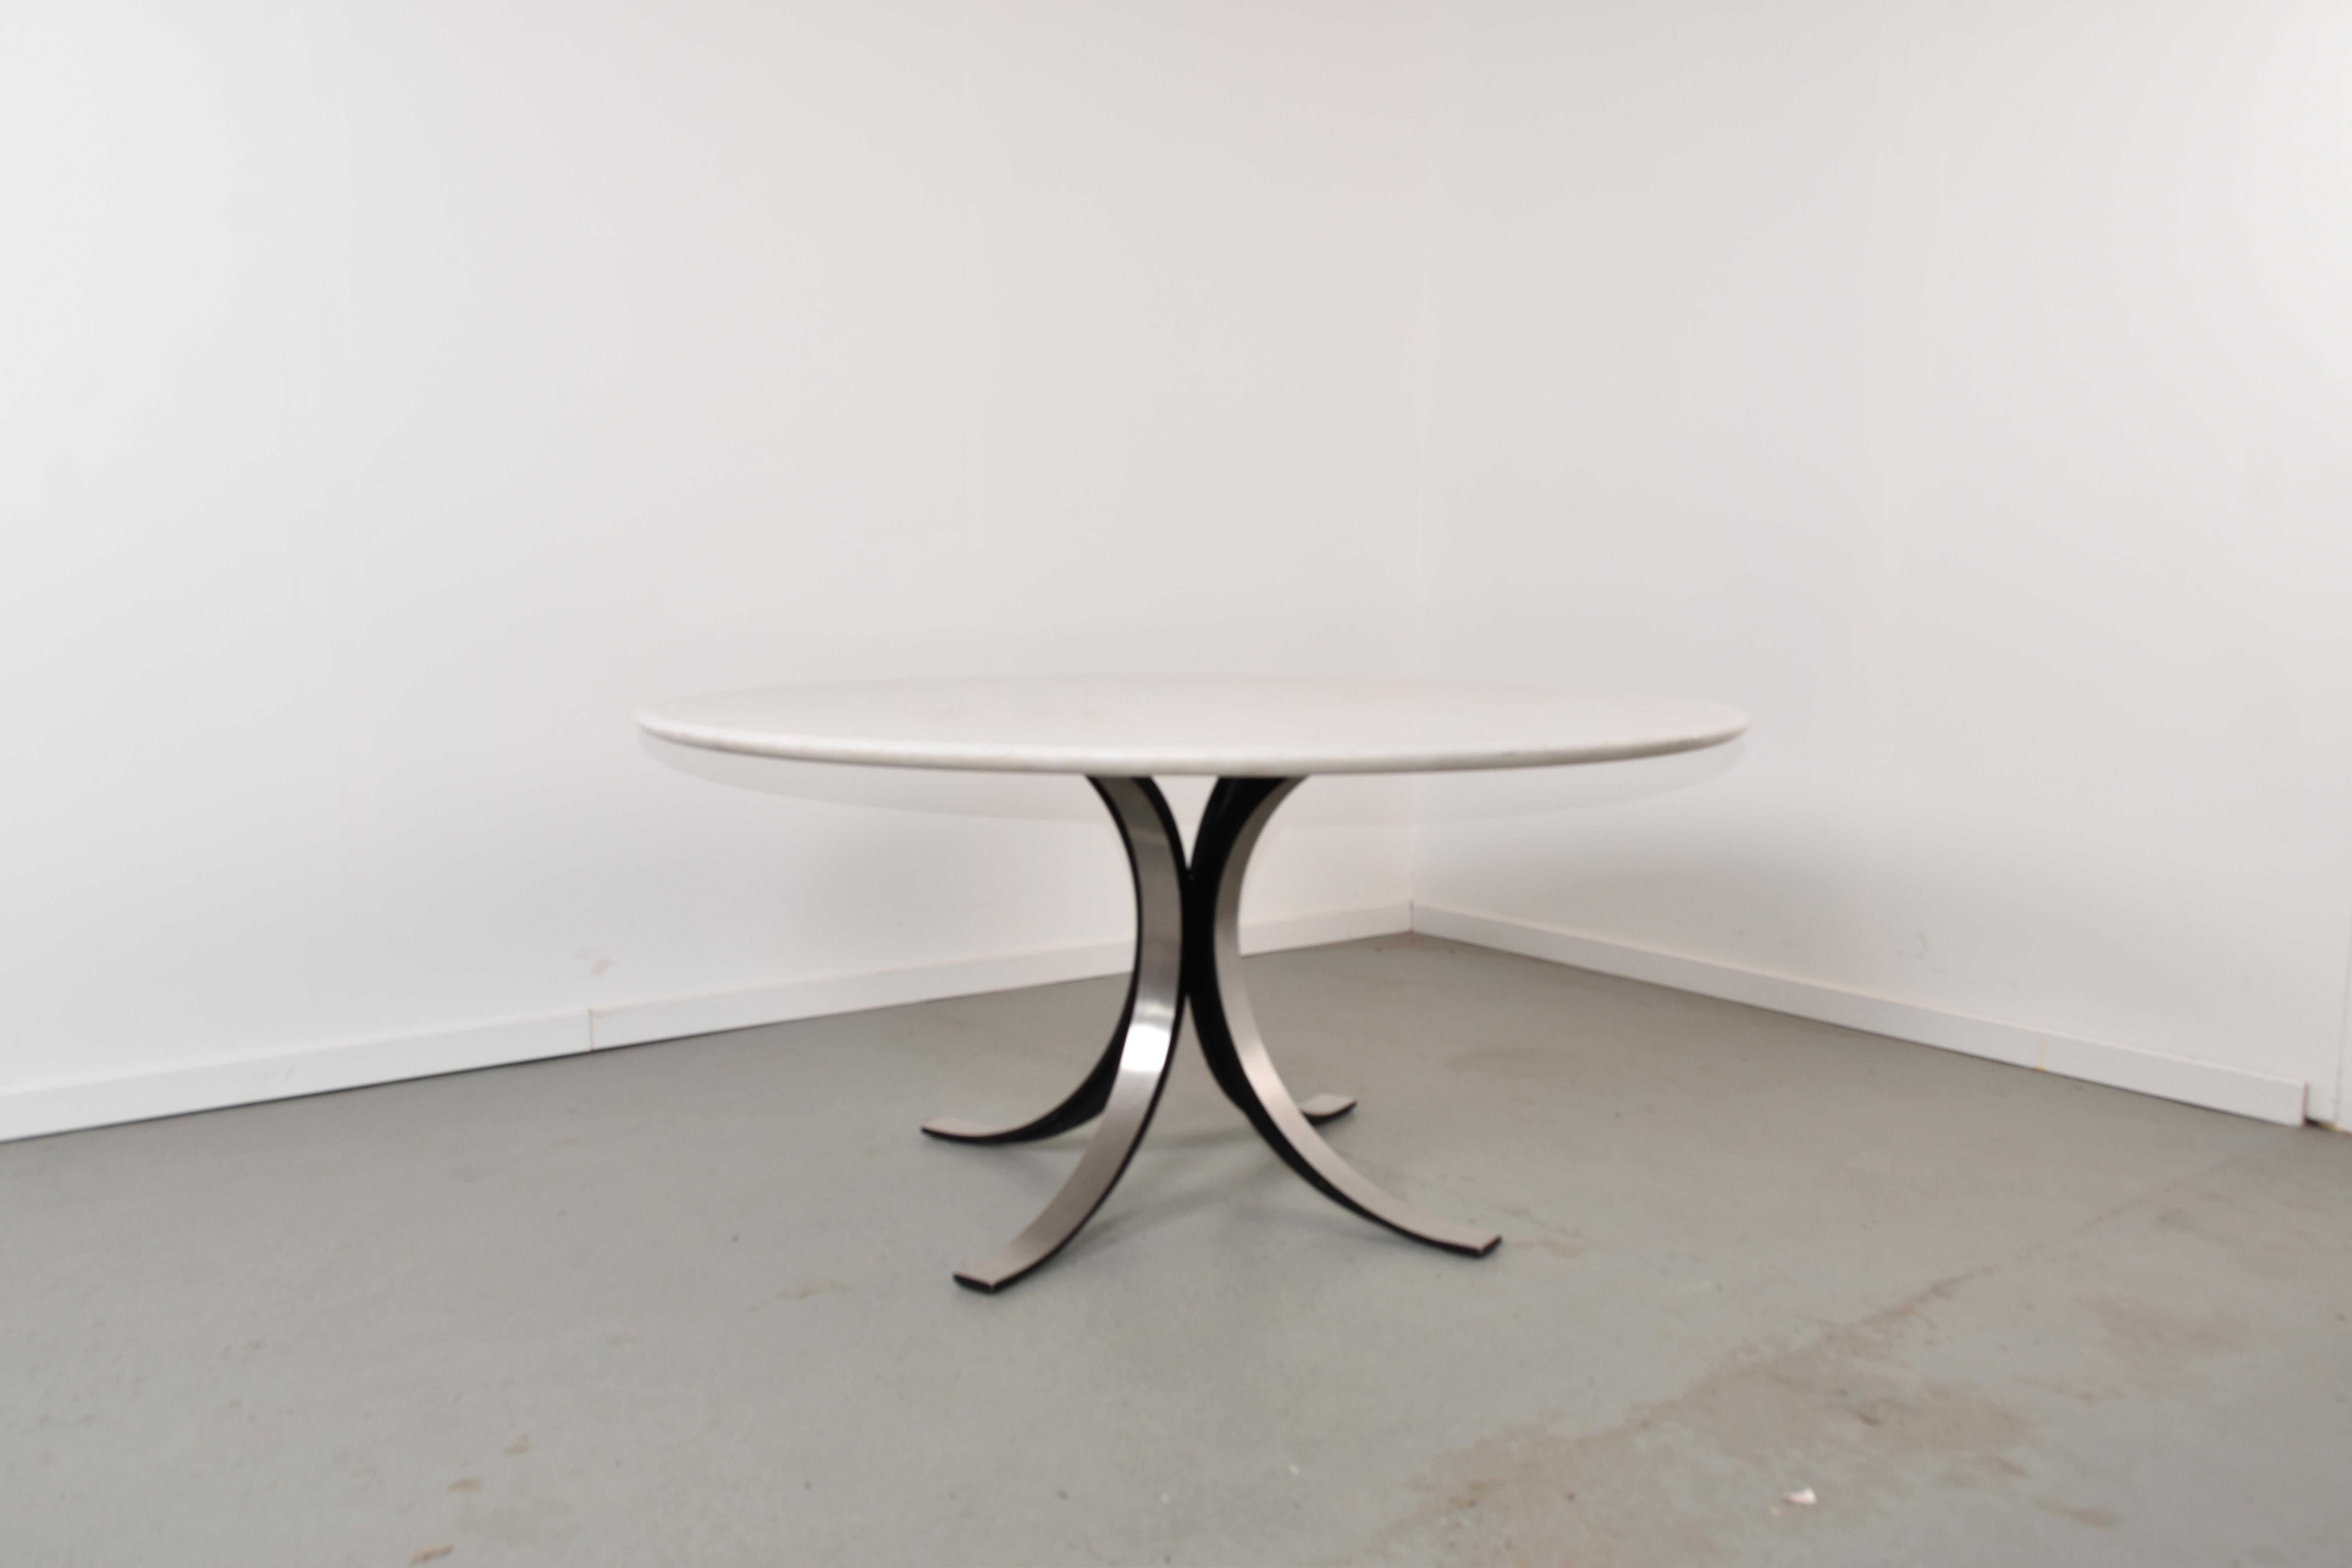 Table basse de salle à manger T69 par Osvaldo Borsani & Eugenio Gerli pour Tecno.

Le plateau de la table est en marbre blanc massif en bon état avec quelques signes d'utilisation correspondant à l'âge.

La base est en métal élancé et donne une